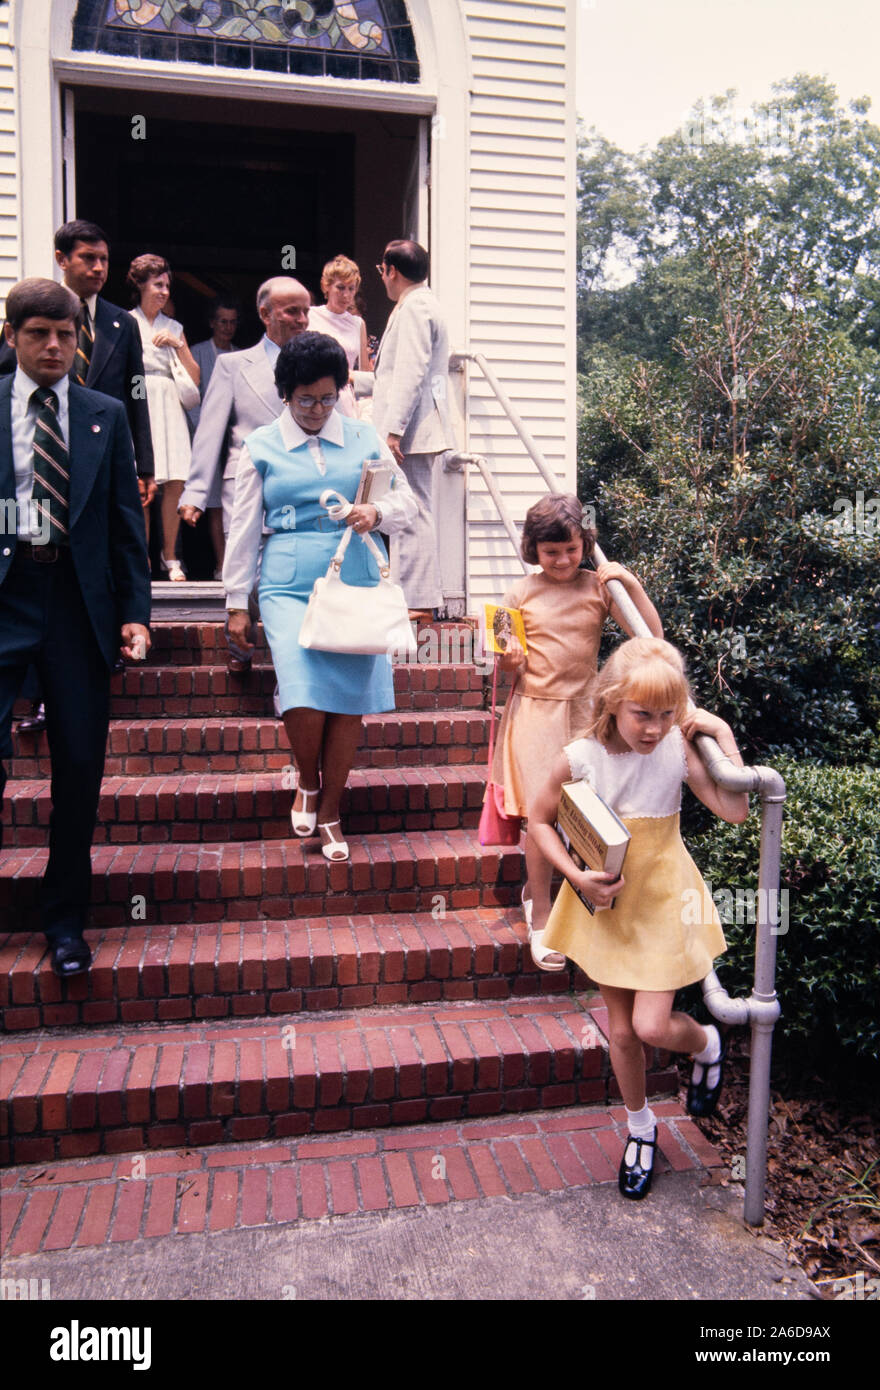 Amy carter - en robe jaune - fille du président Jimmy carter, est éclipsée par un agent du service secret alors qu'elle quitte les services du dimanche à l'église baptiste des plaines, en Géorgie. Banque D'Images